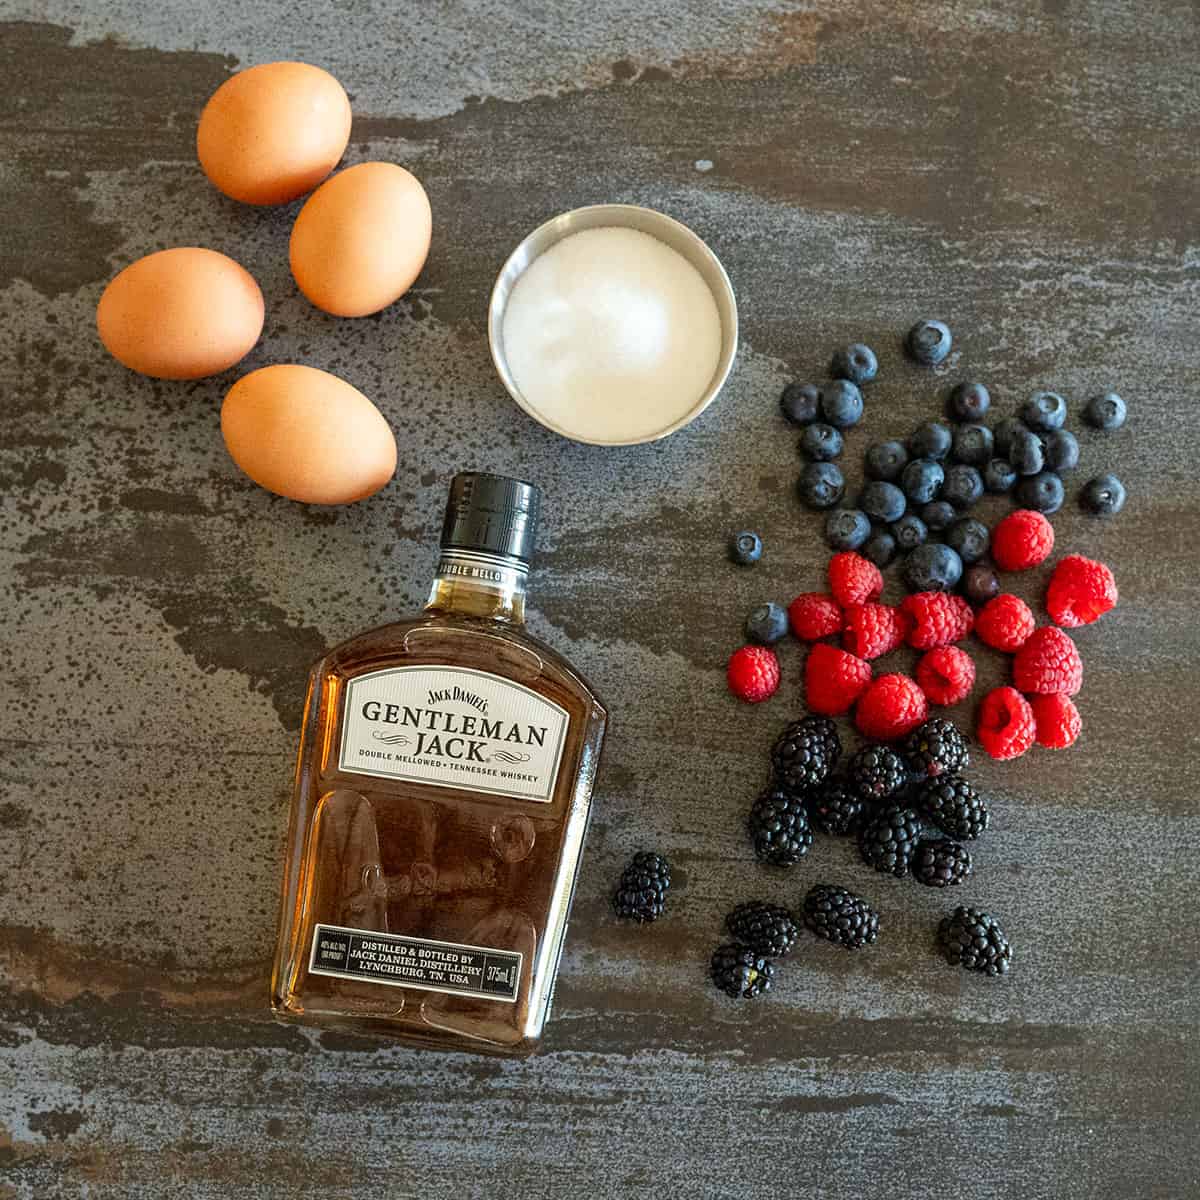 Sabayon ingredients: eggs, sugar, berries, whiskey.